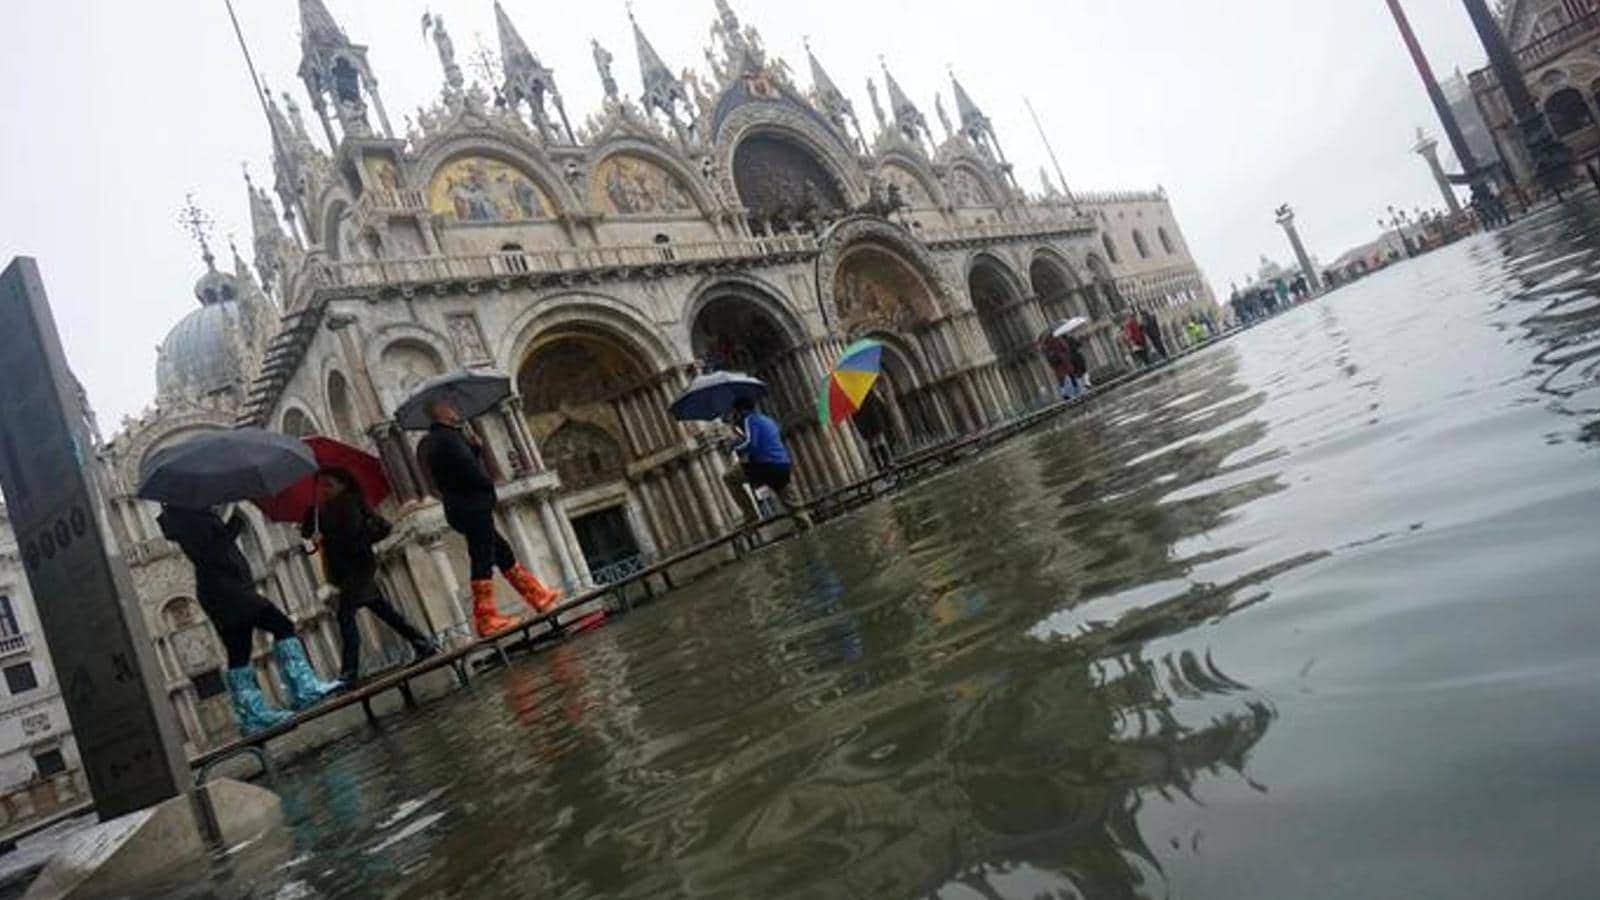 Acqua alta in piazza San Marco: cittadini e turisti camminano sulla passerella con calosce ai piedi e ombrelli aperti.